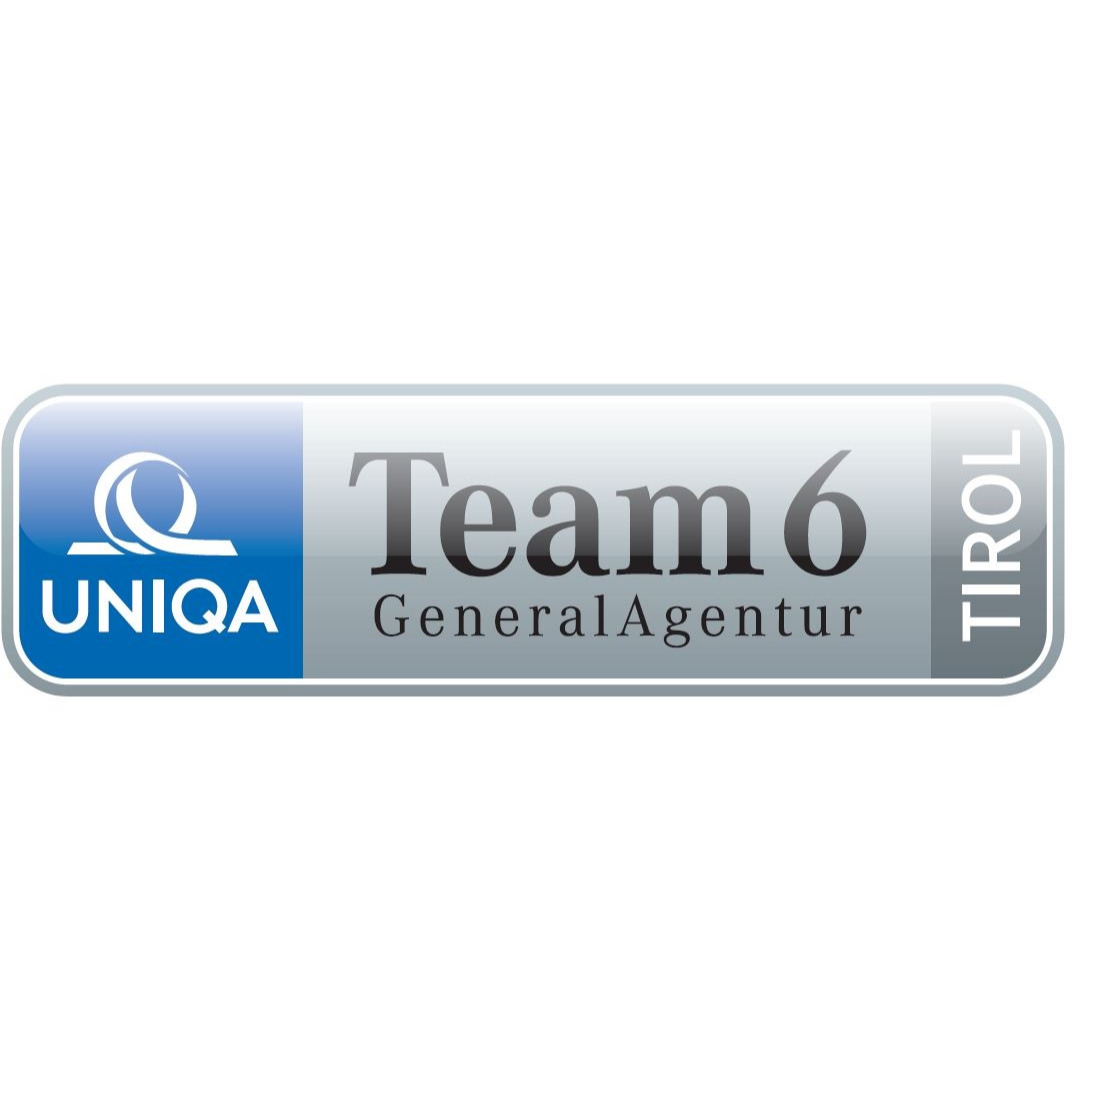 Uniqa GeneralAgentur Team 6 - Fagschlunger Spielmann Engl OG Zulassungsstelle - Insurance Agency - Innsbruck - 0512 283171 Austria | ShowMeLocal.com